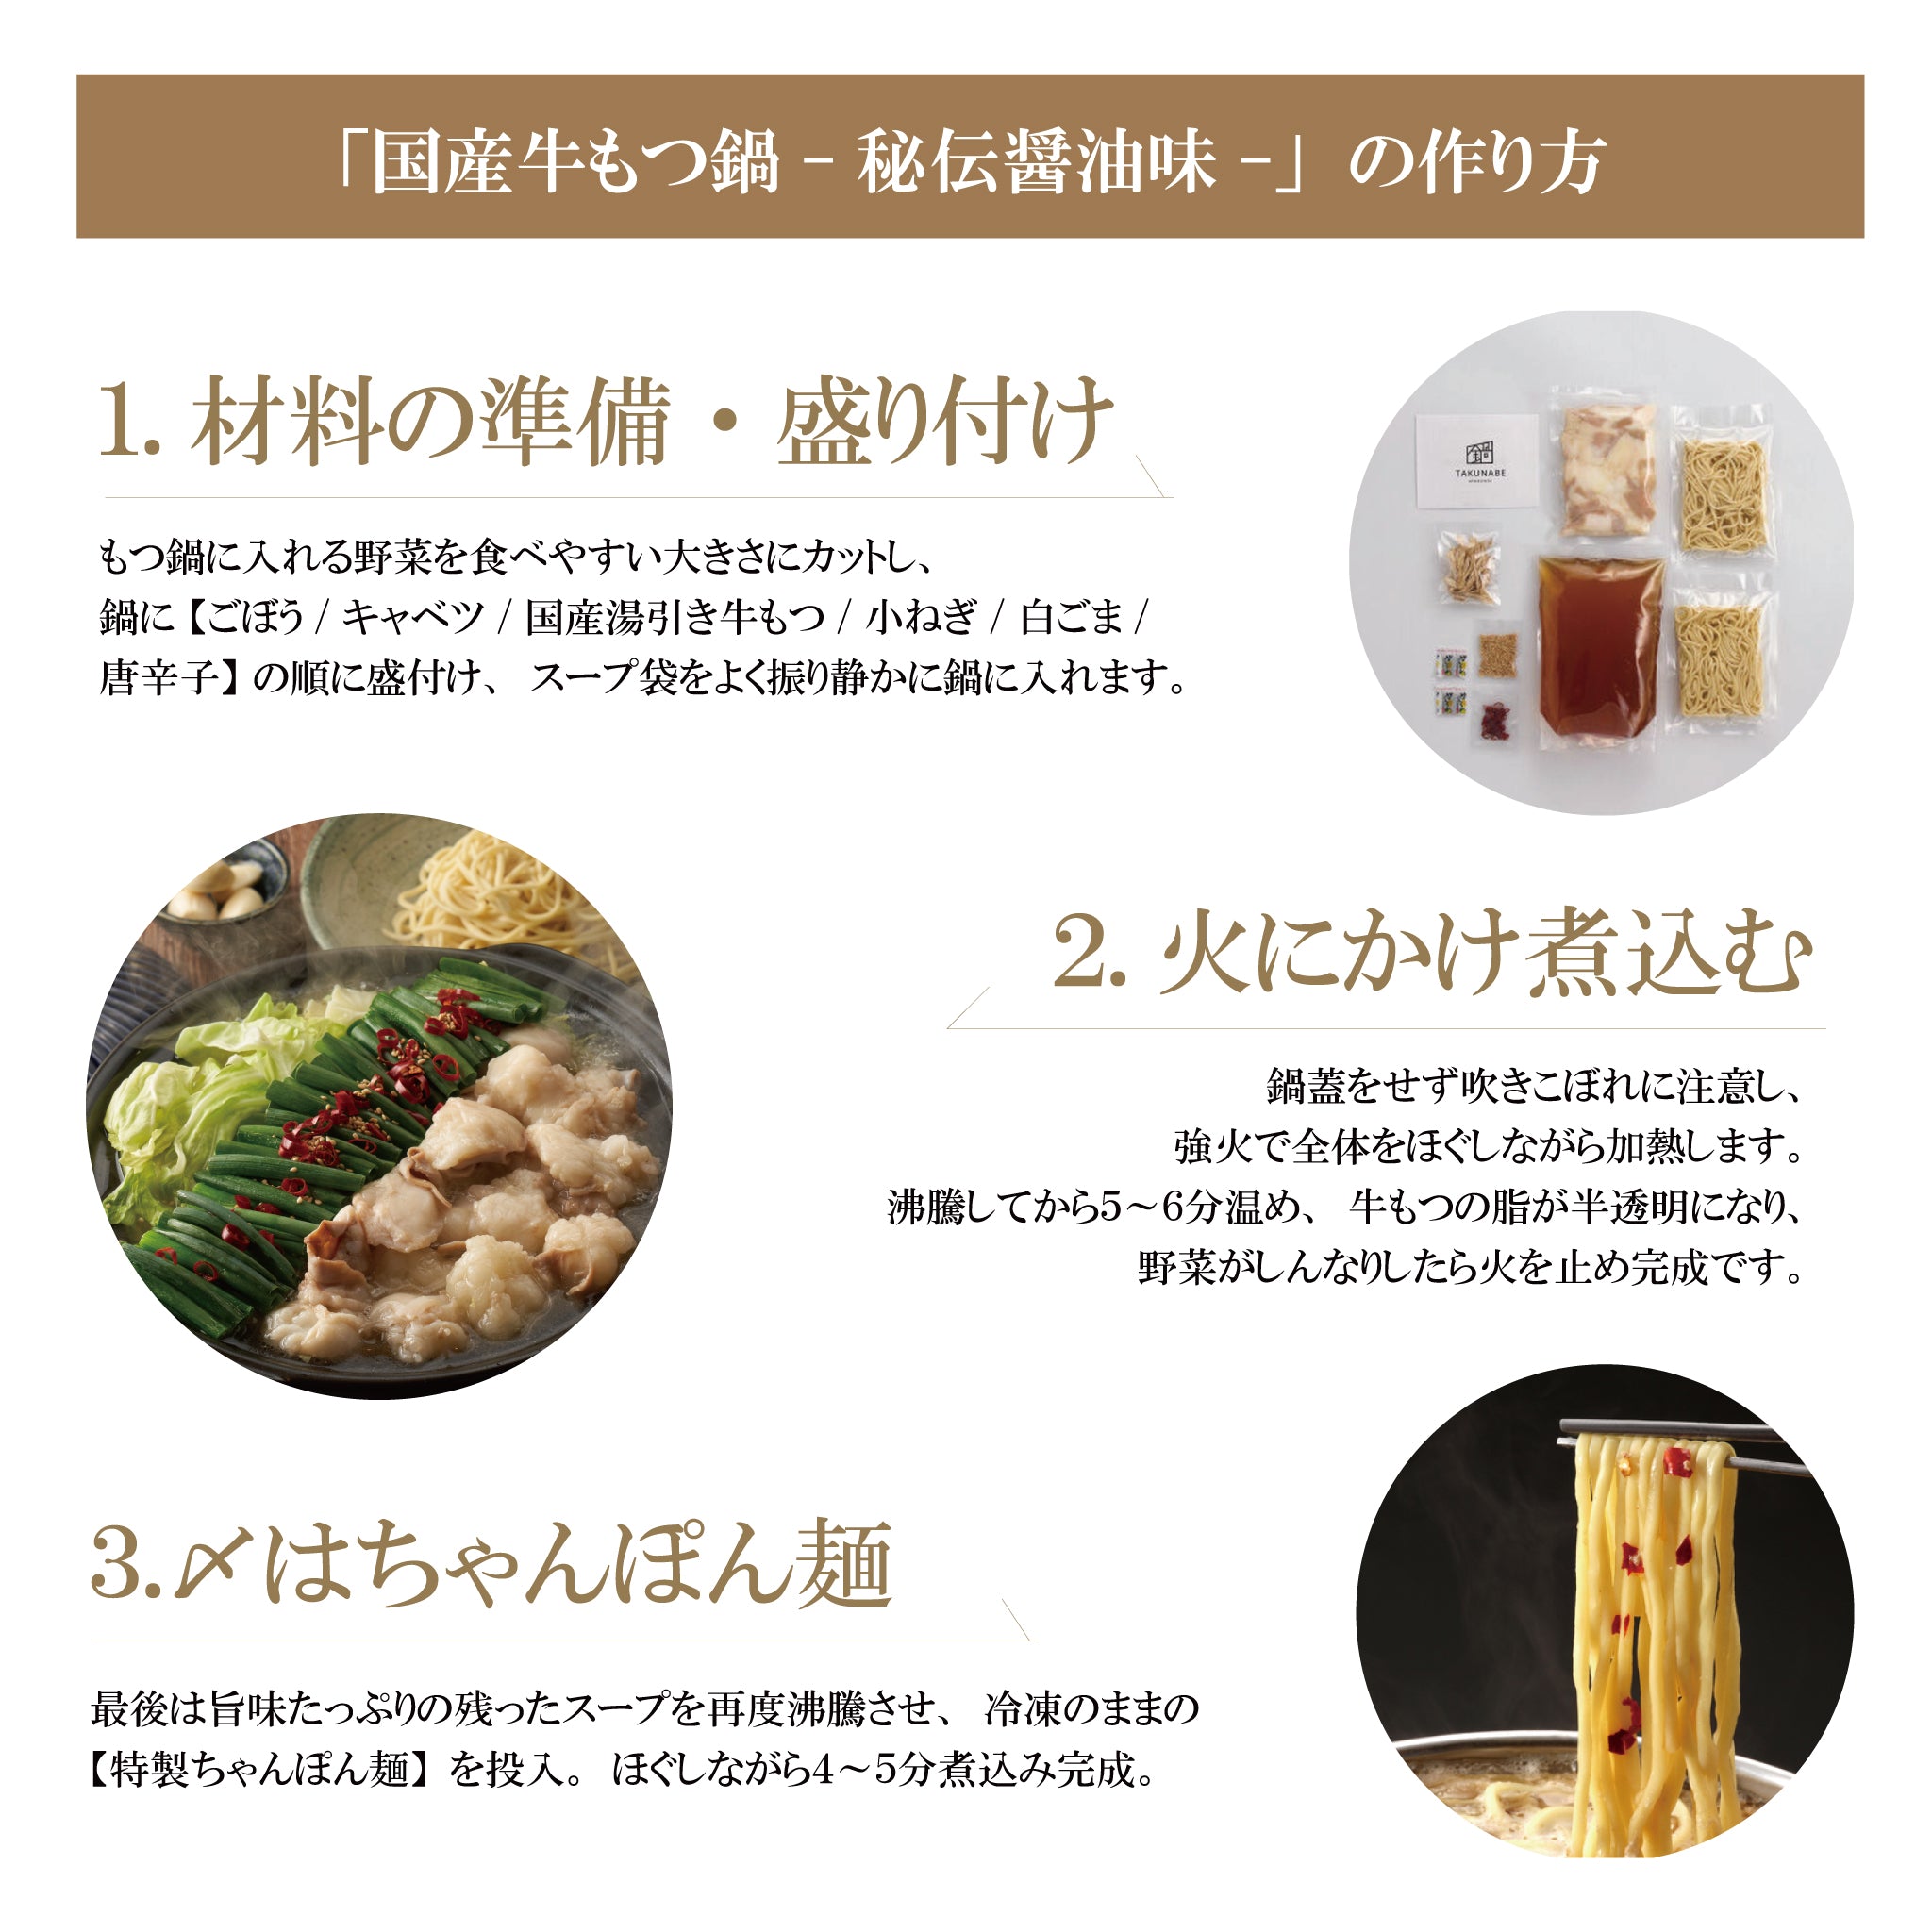 ベストセラー商品 /// 秘伝国産牛もつ鍋-醤油味- 特製〆ちゃんぽん麺